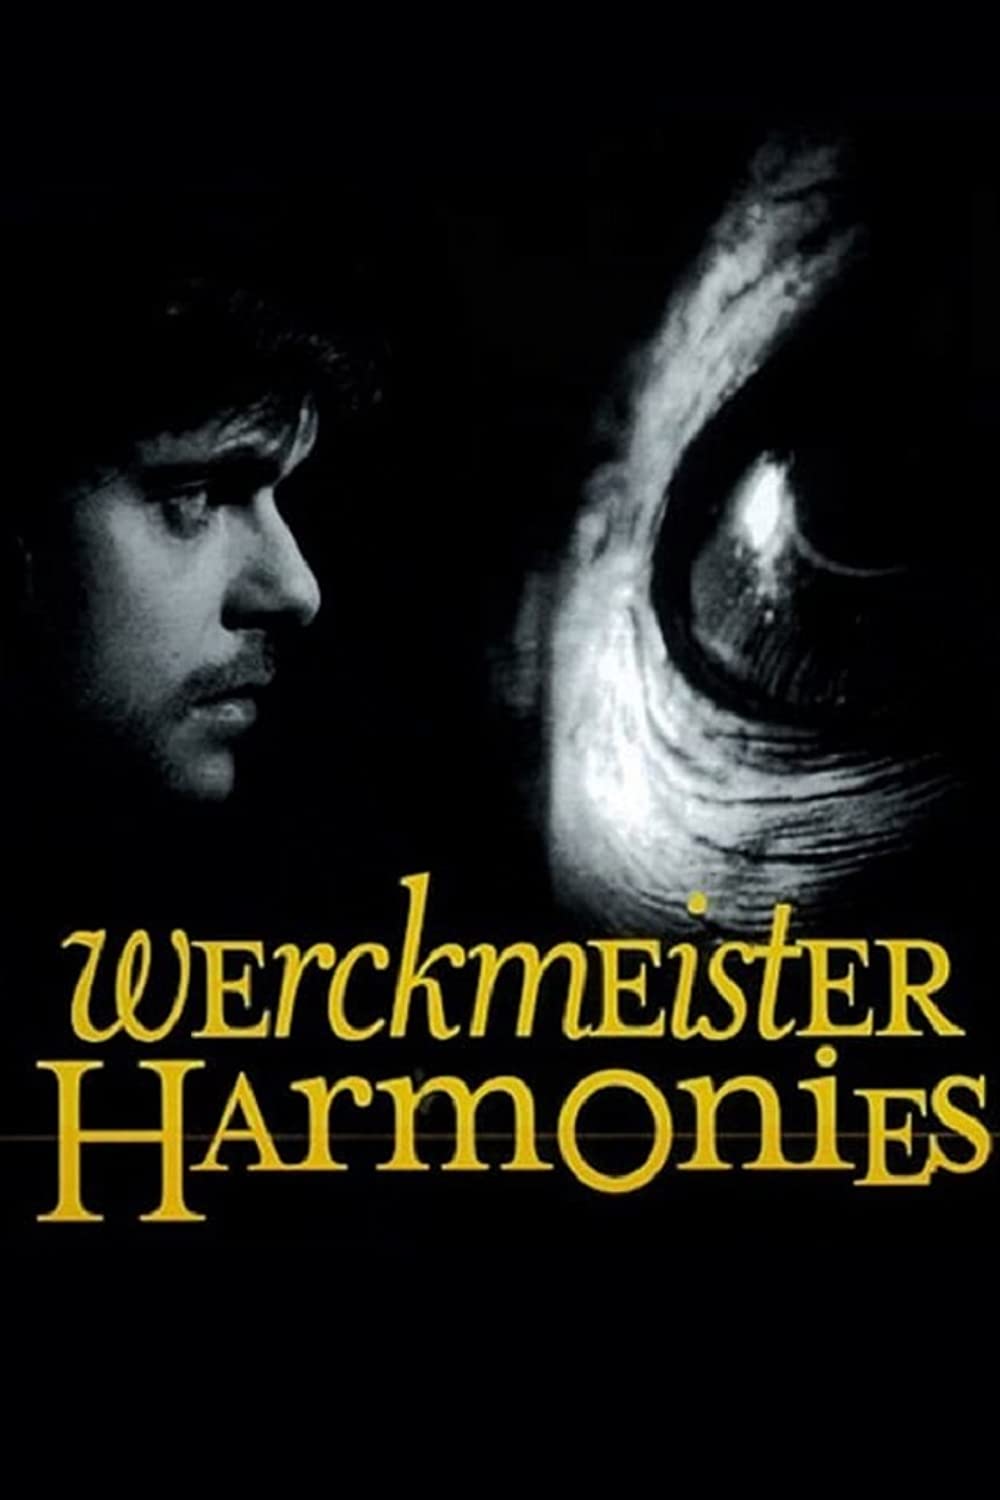 Filmbeschreibung zu Werckmeister harmóniák